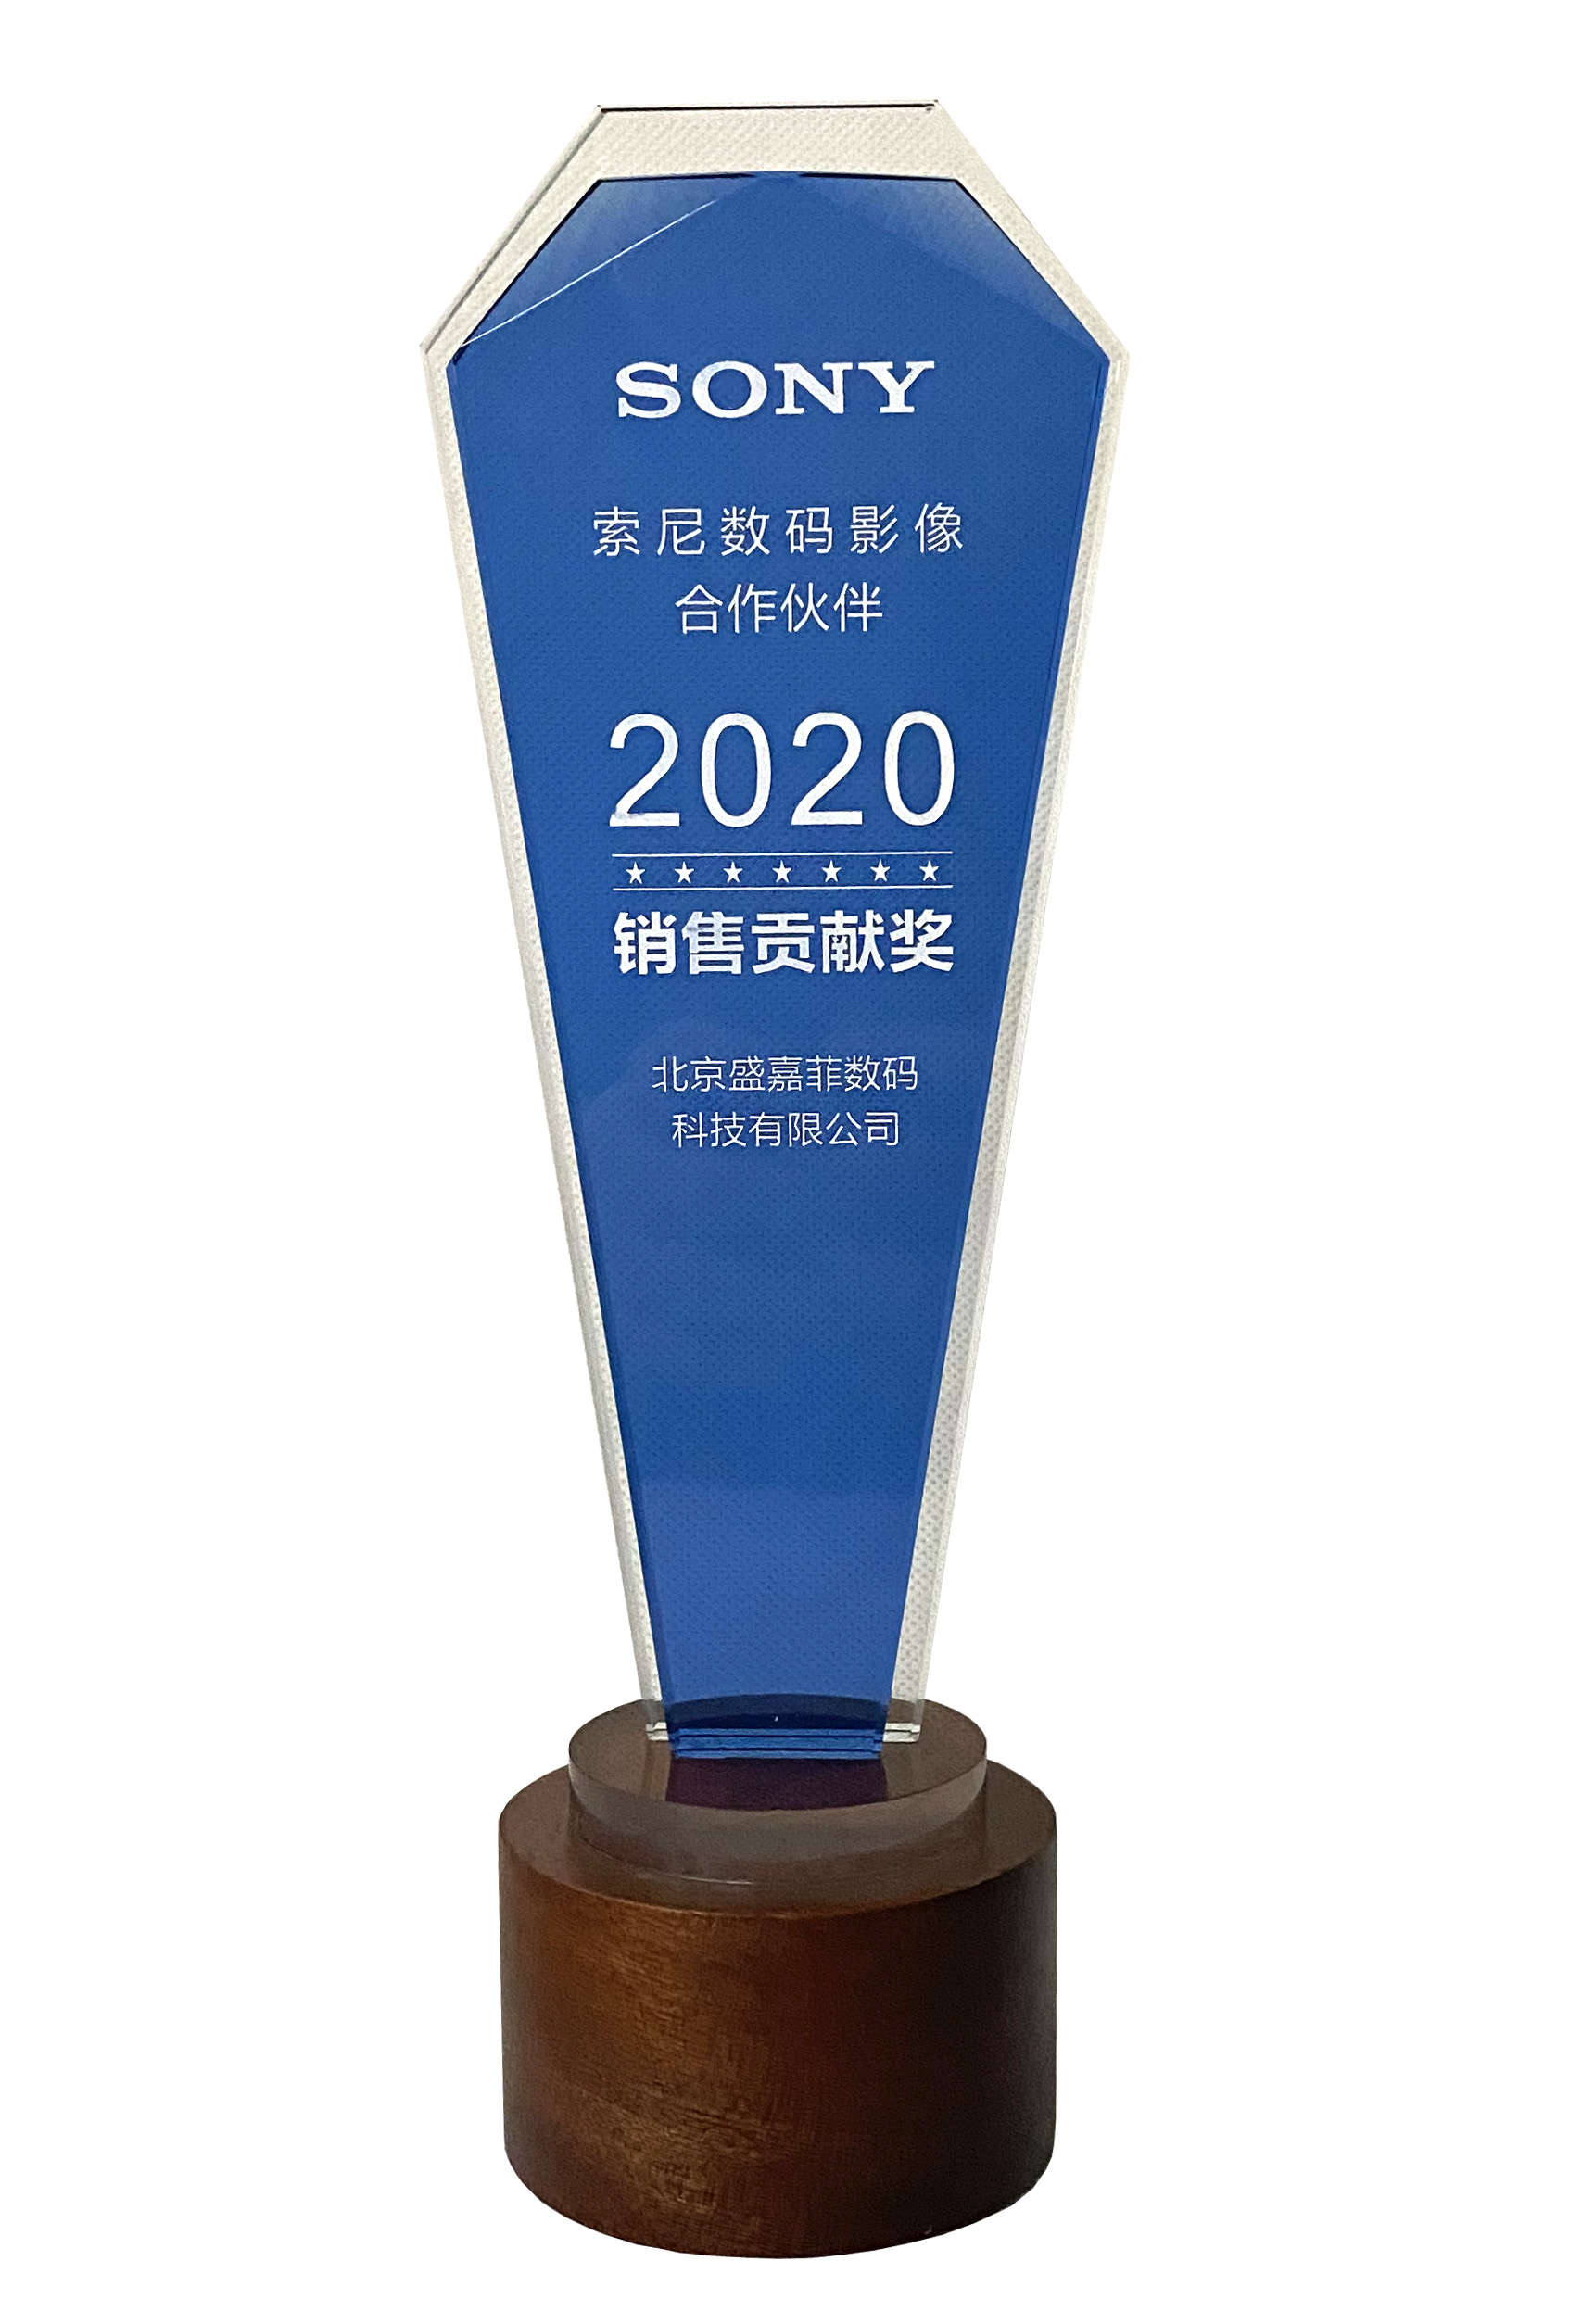 SONY-xiaoshougongxian-2020.jpg